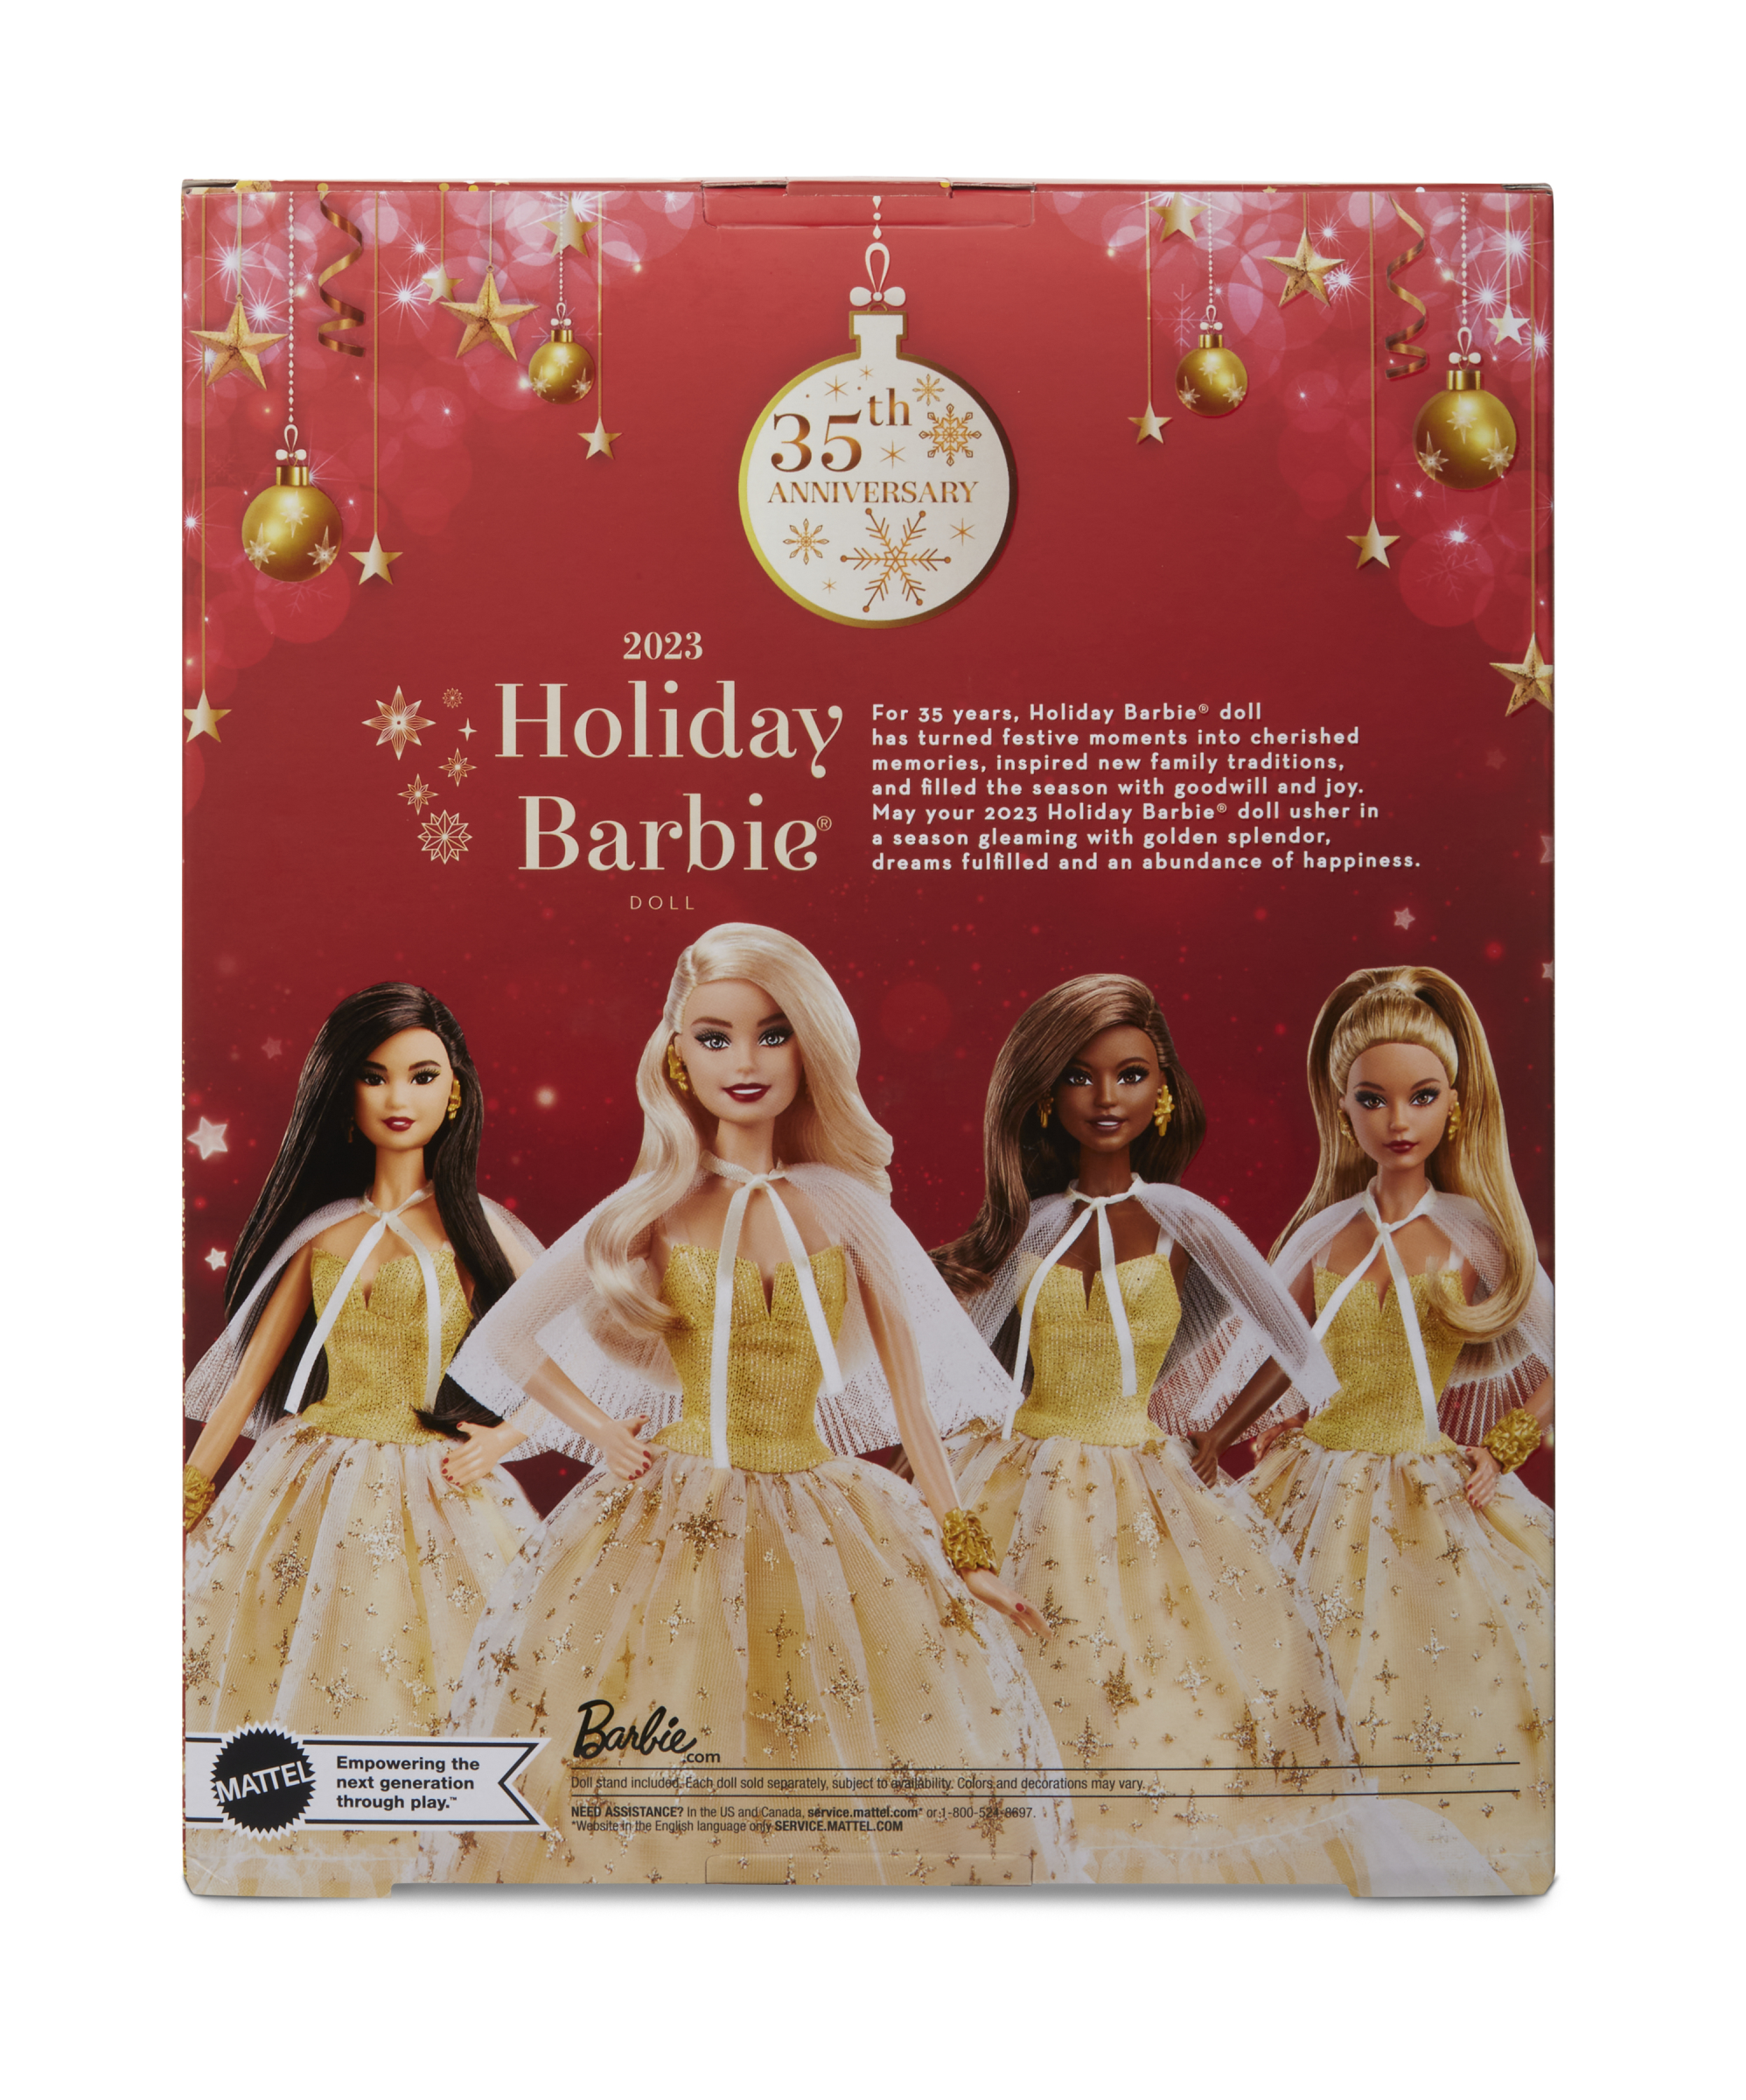 Barbie Signature - Magia Delle Feste 2023, Da Collezione - Barbie